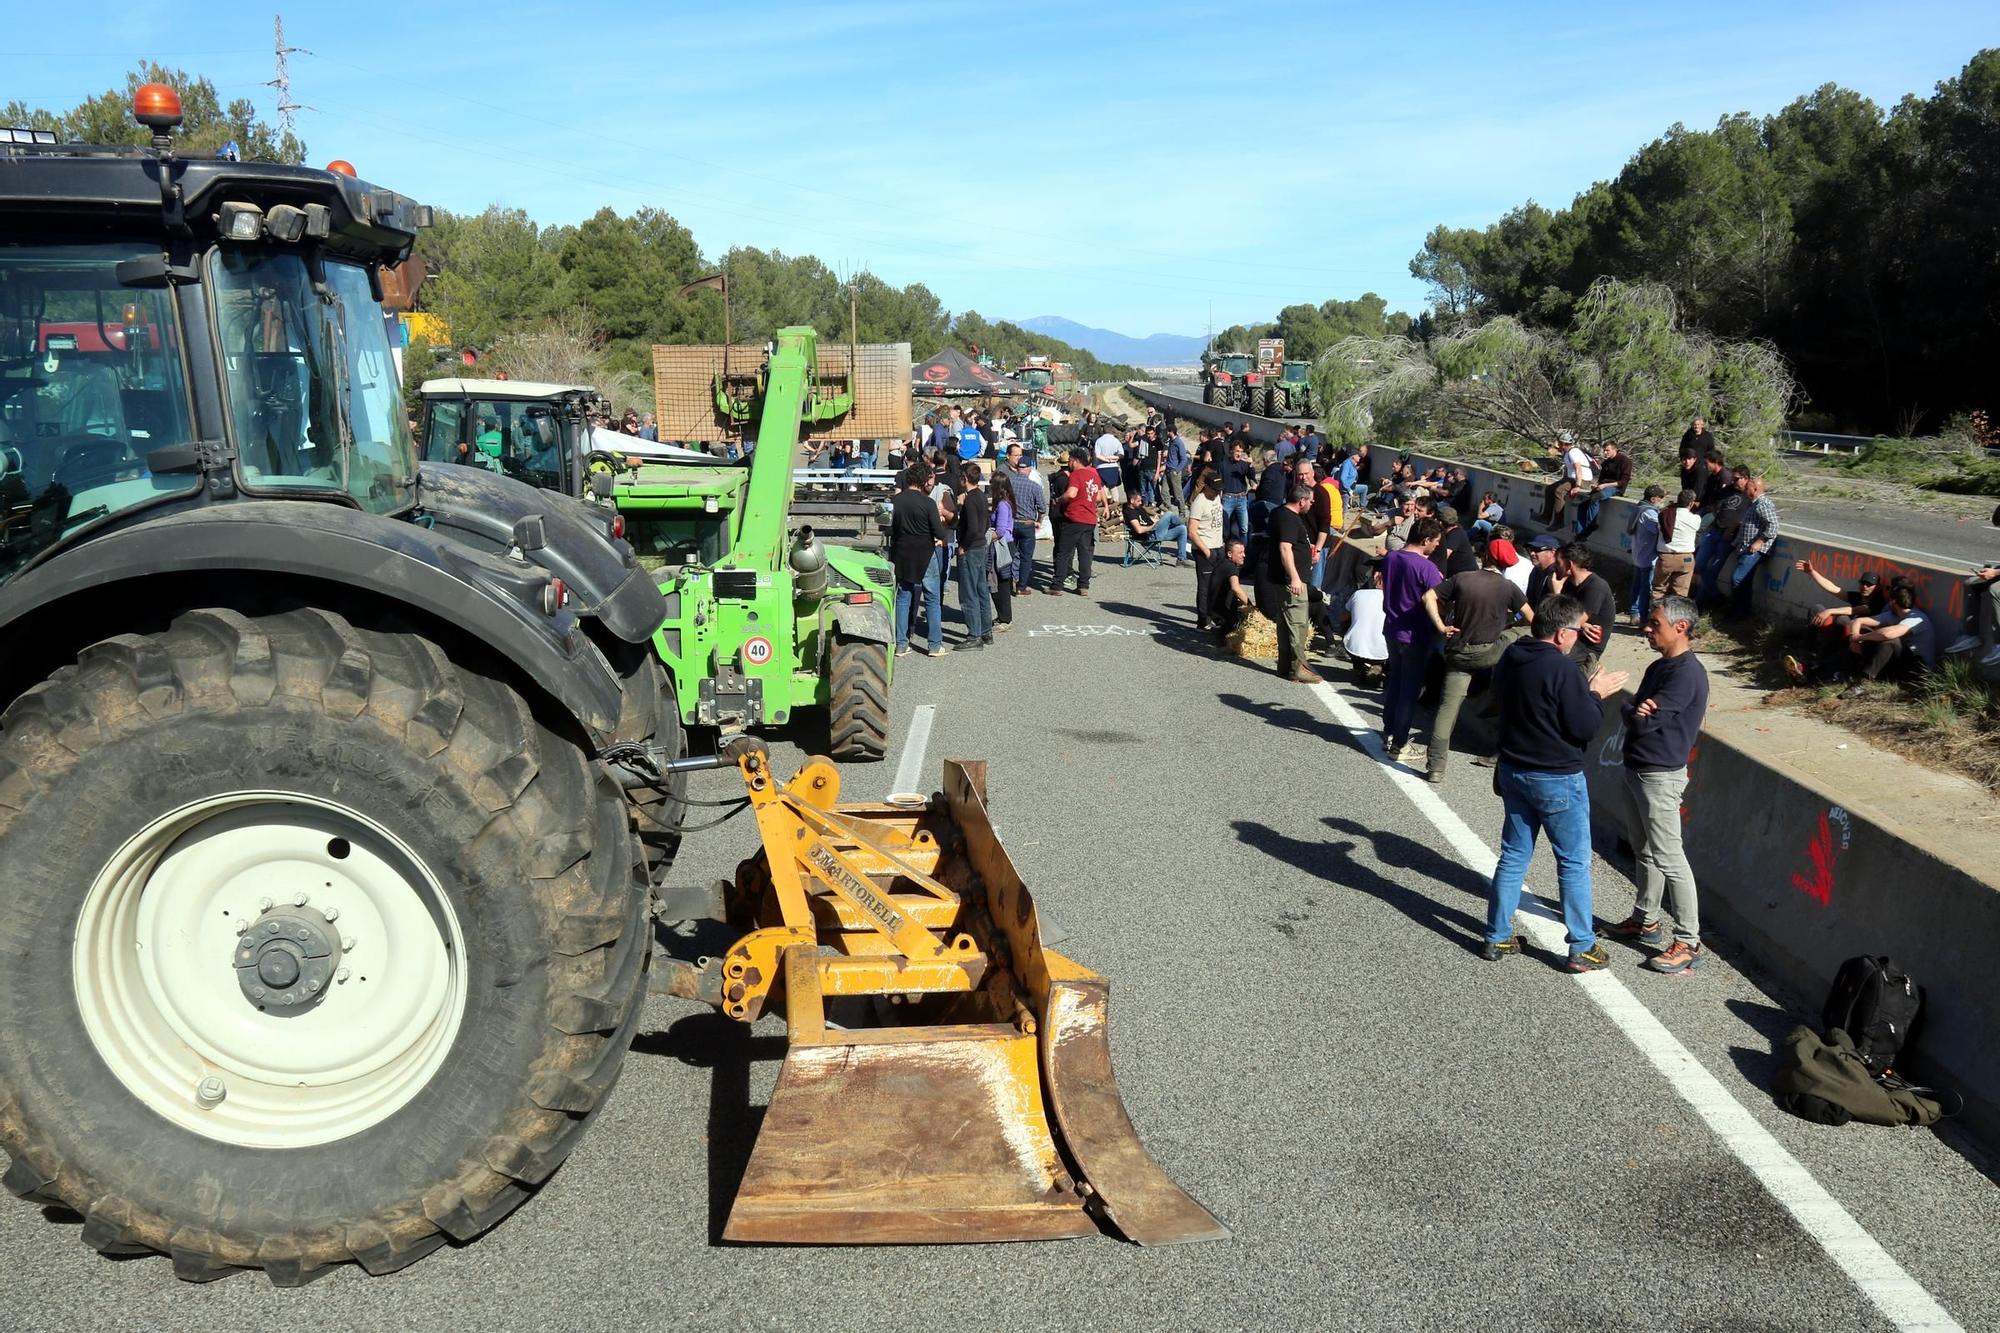 Continuen les afectacions per les protestes de la pagesia gironina